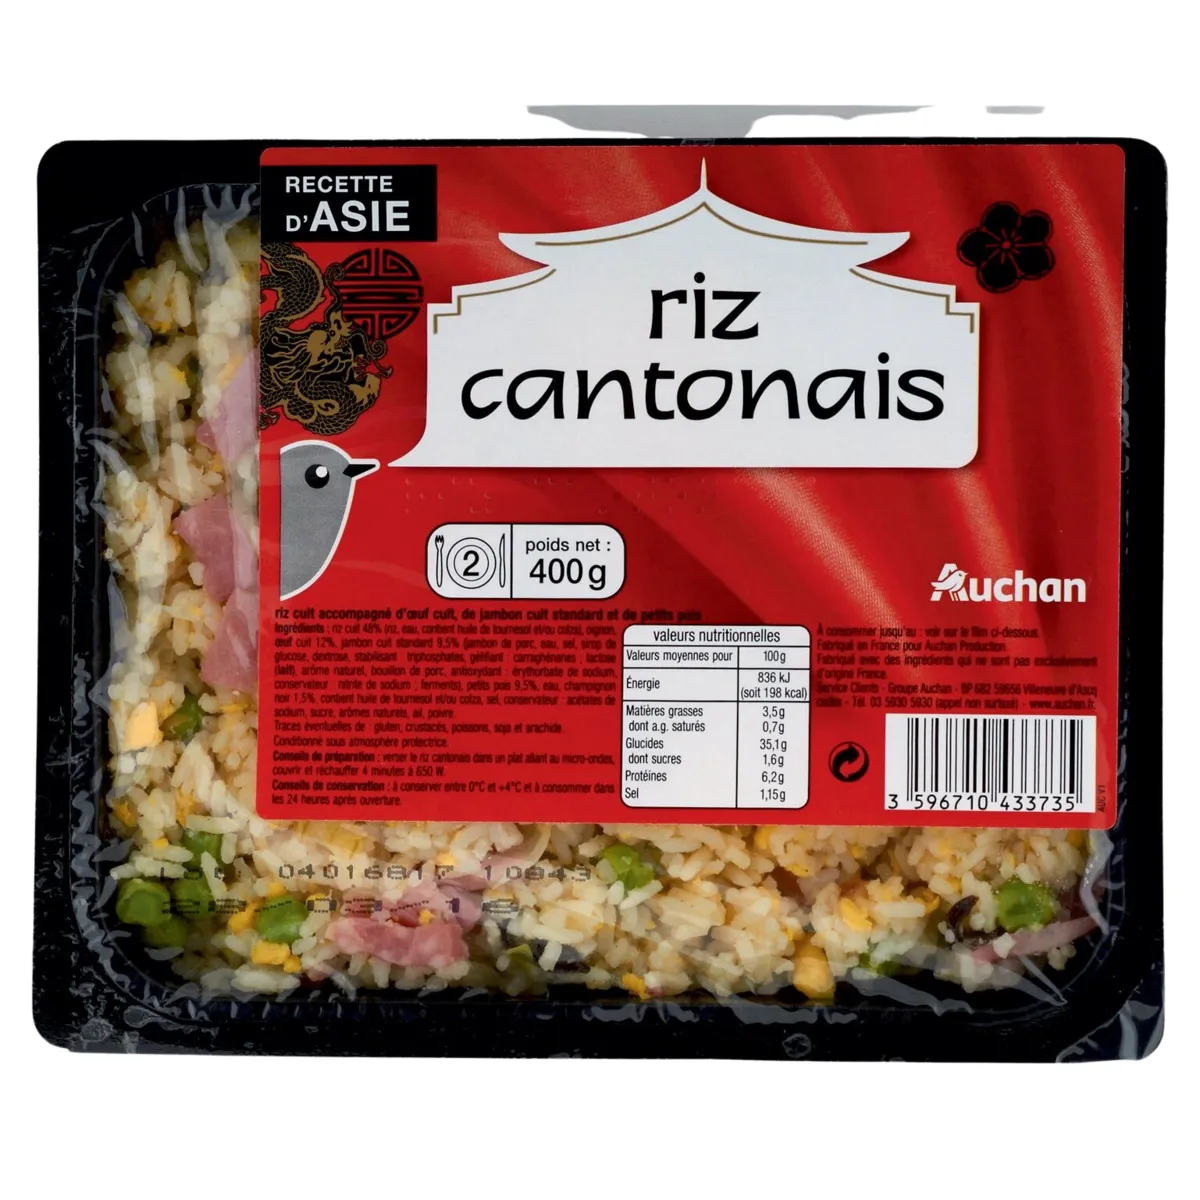 riz cantonais auchan